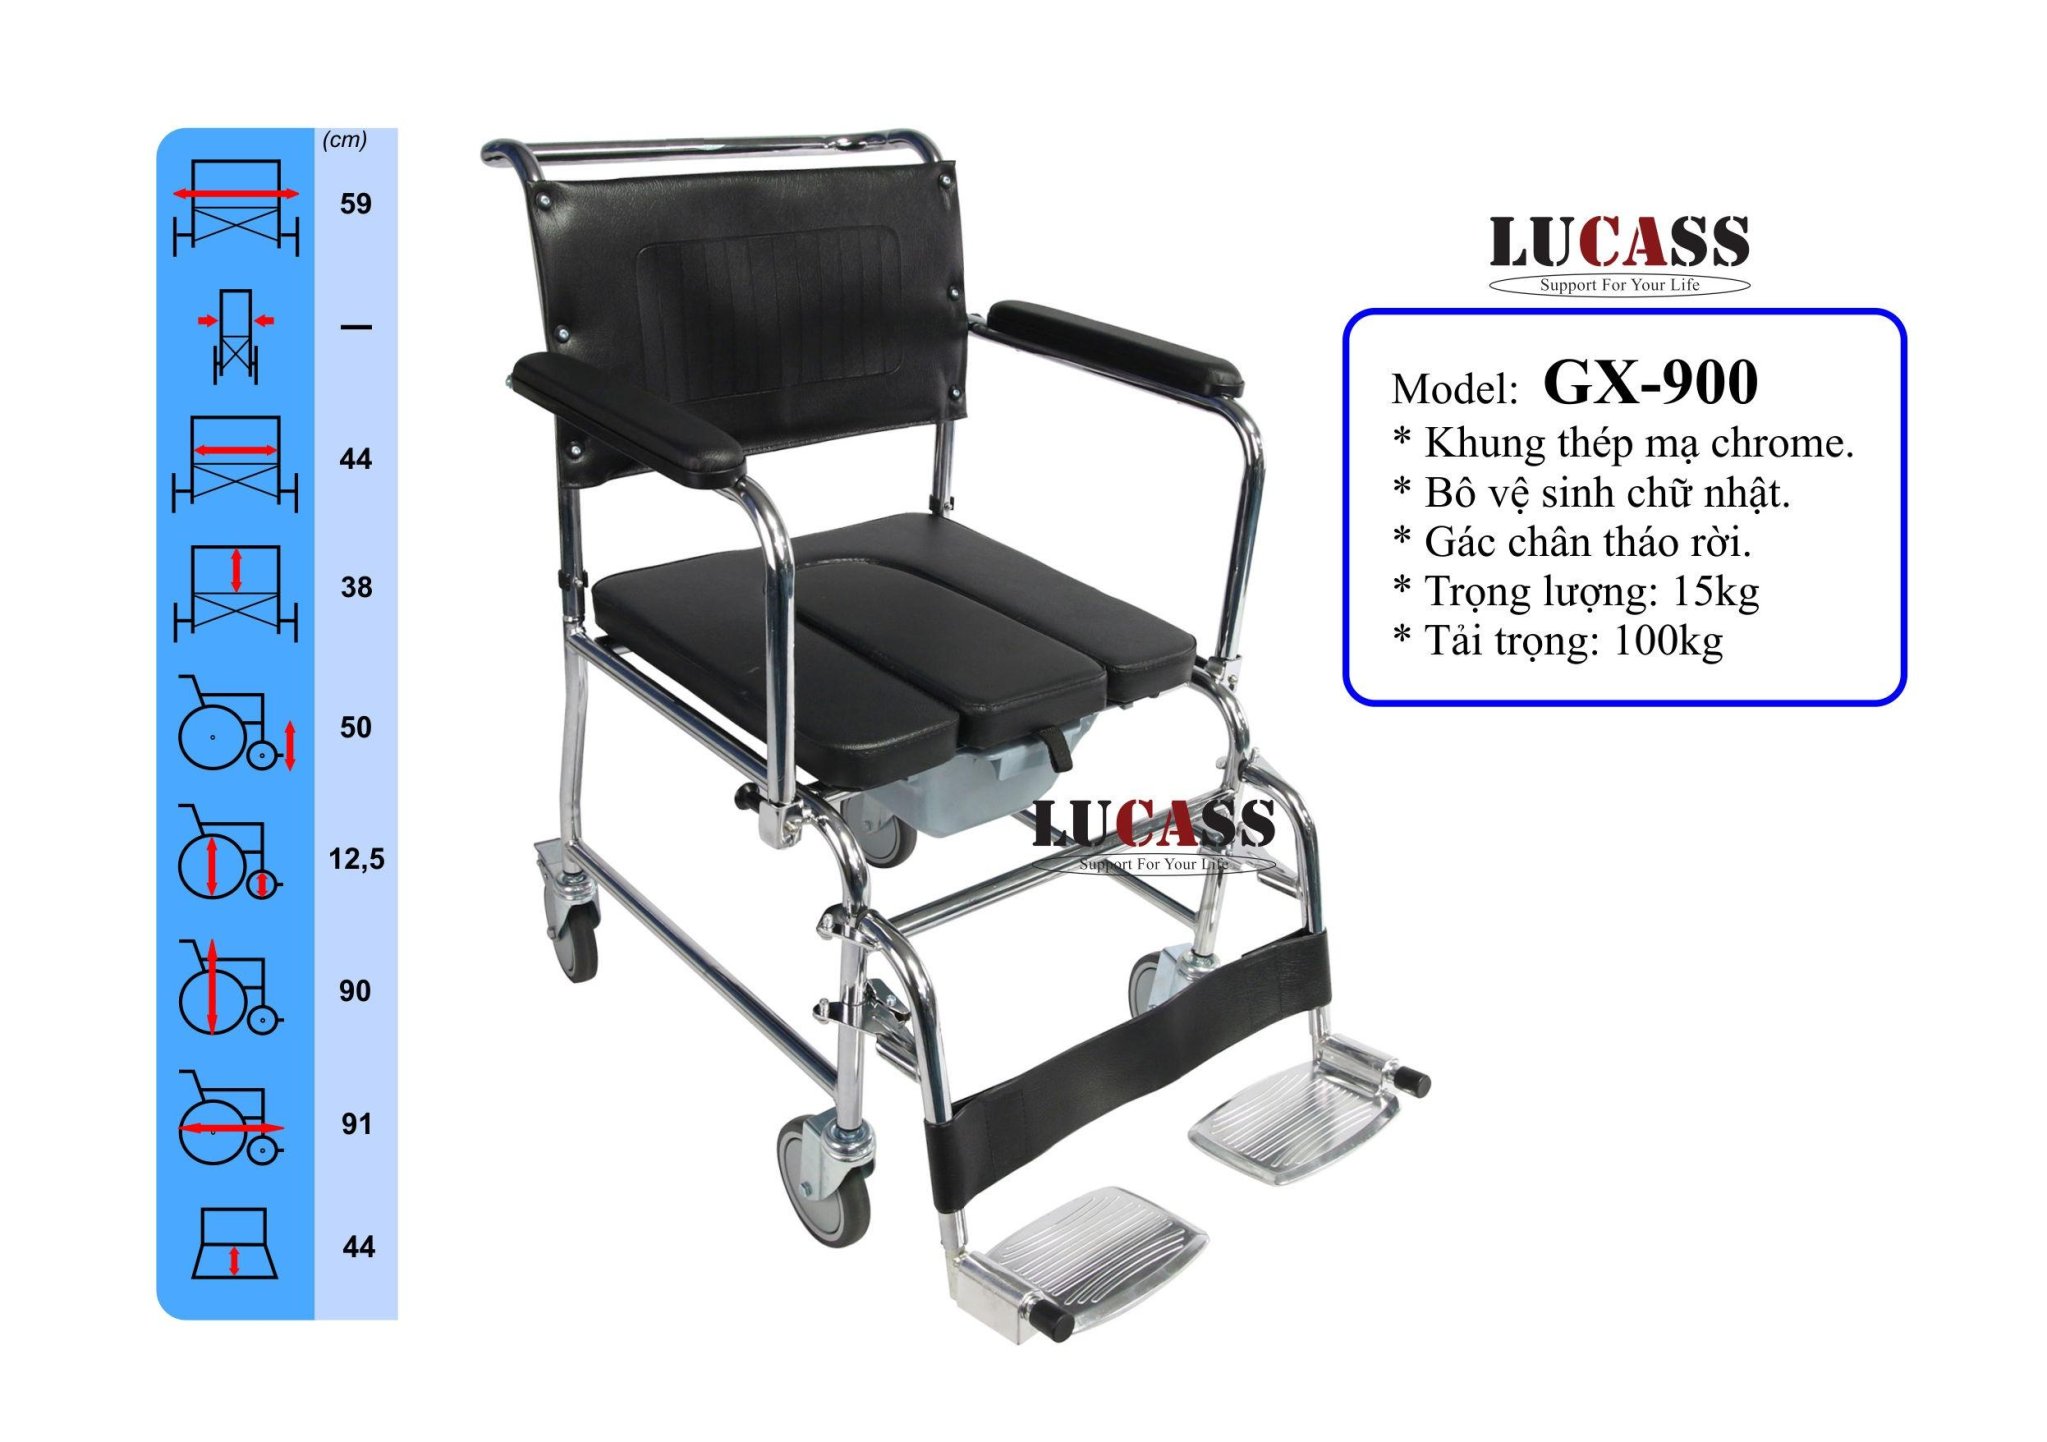 Ghế bô có bánh xe, gác chân tháo rời Lucass GX-900